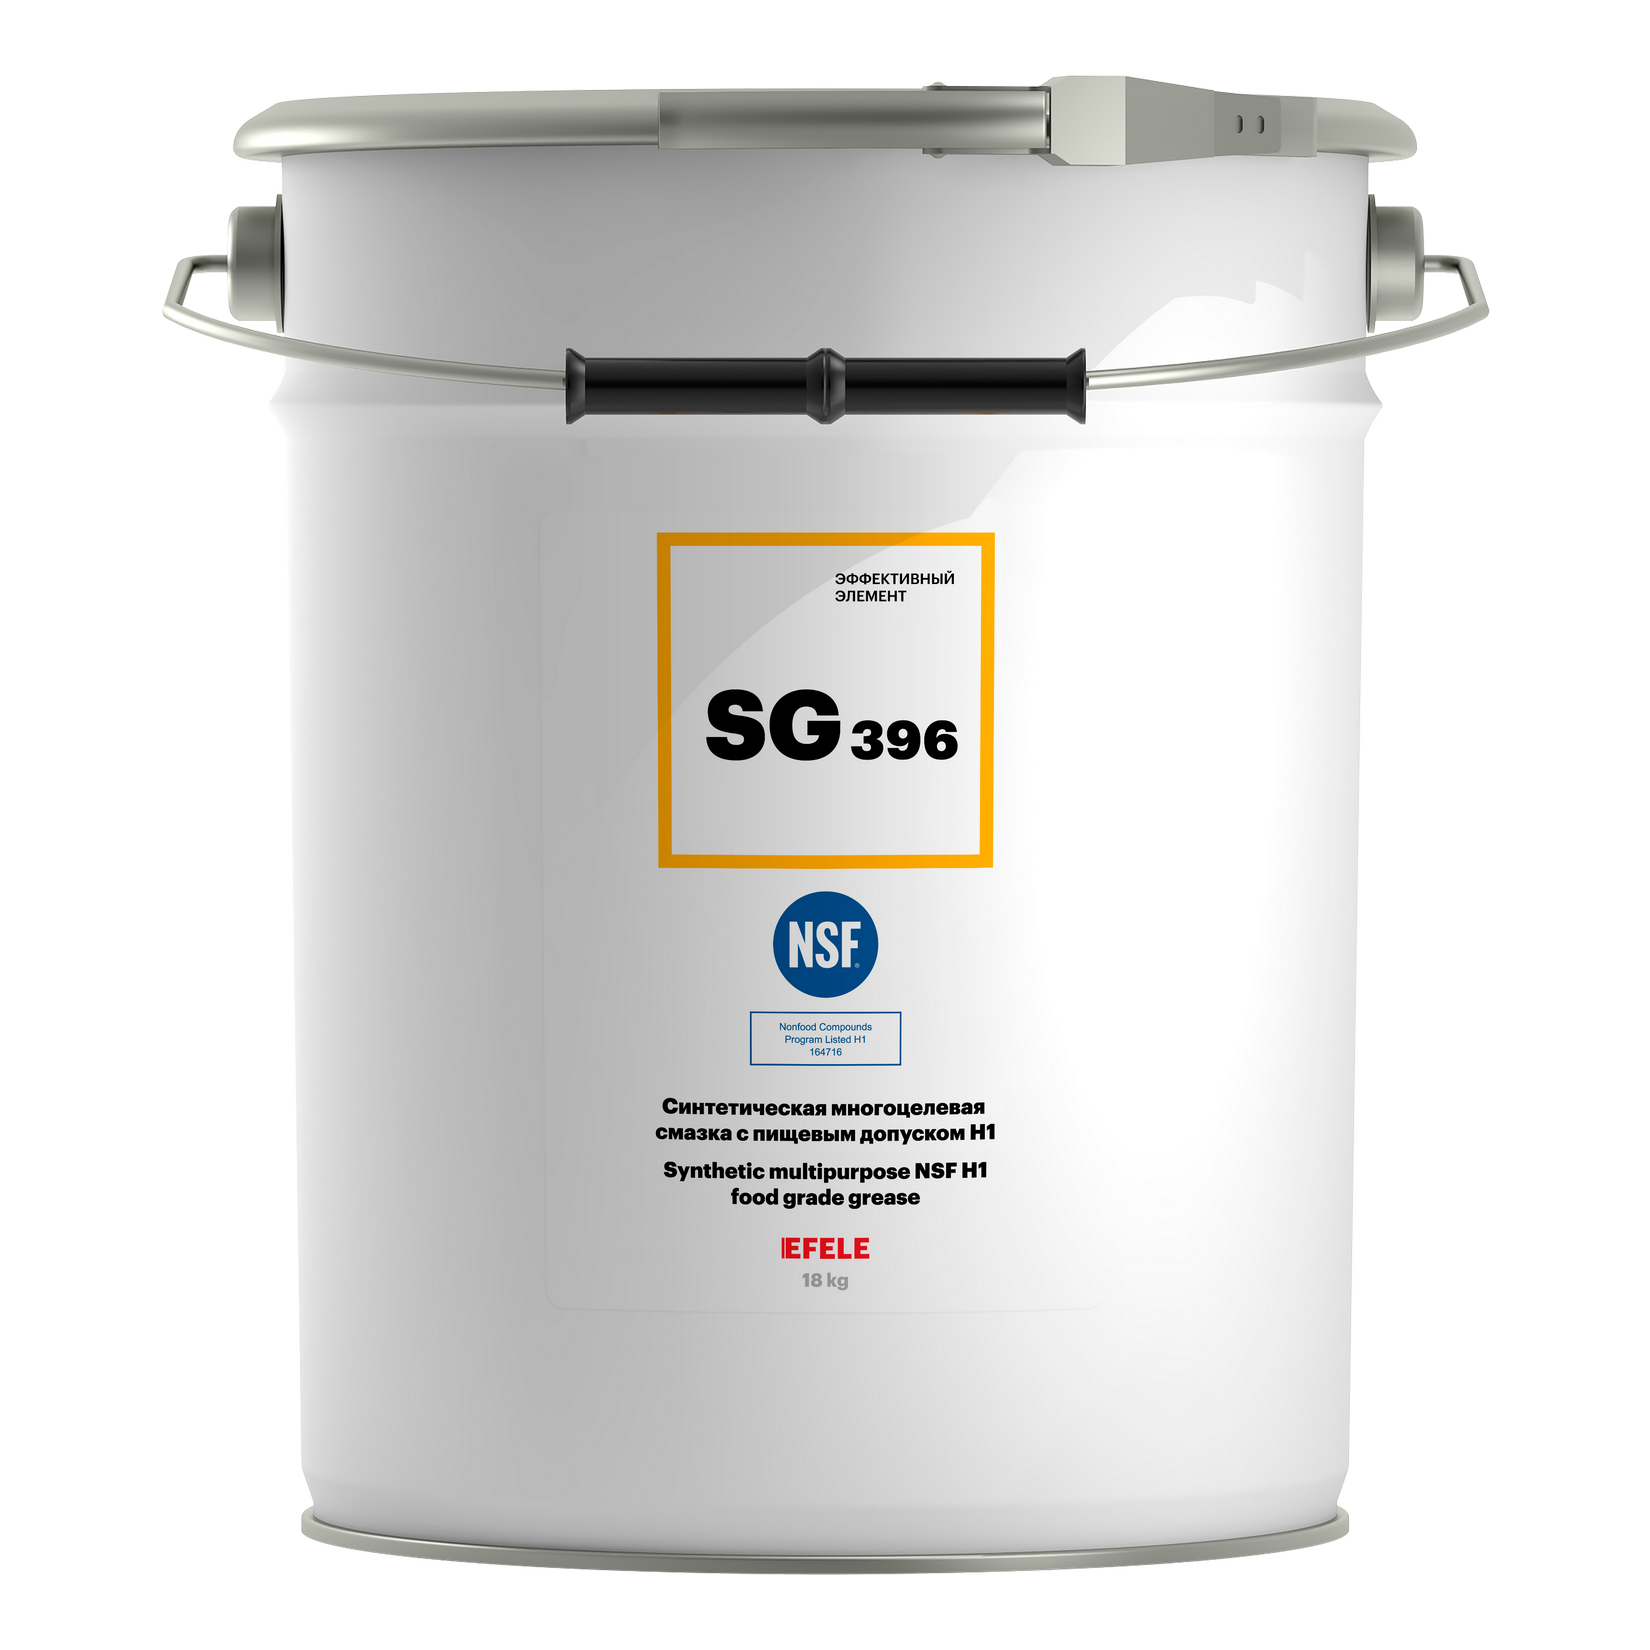 Многоцелевая смазка с пищевым допуском NSF H1 EFELE SG-396 (18 кг)